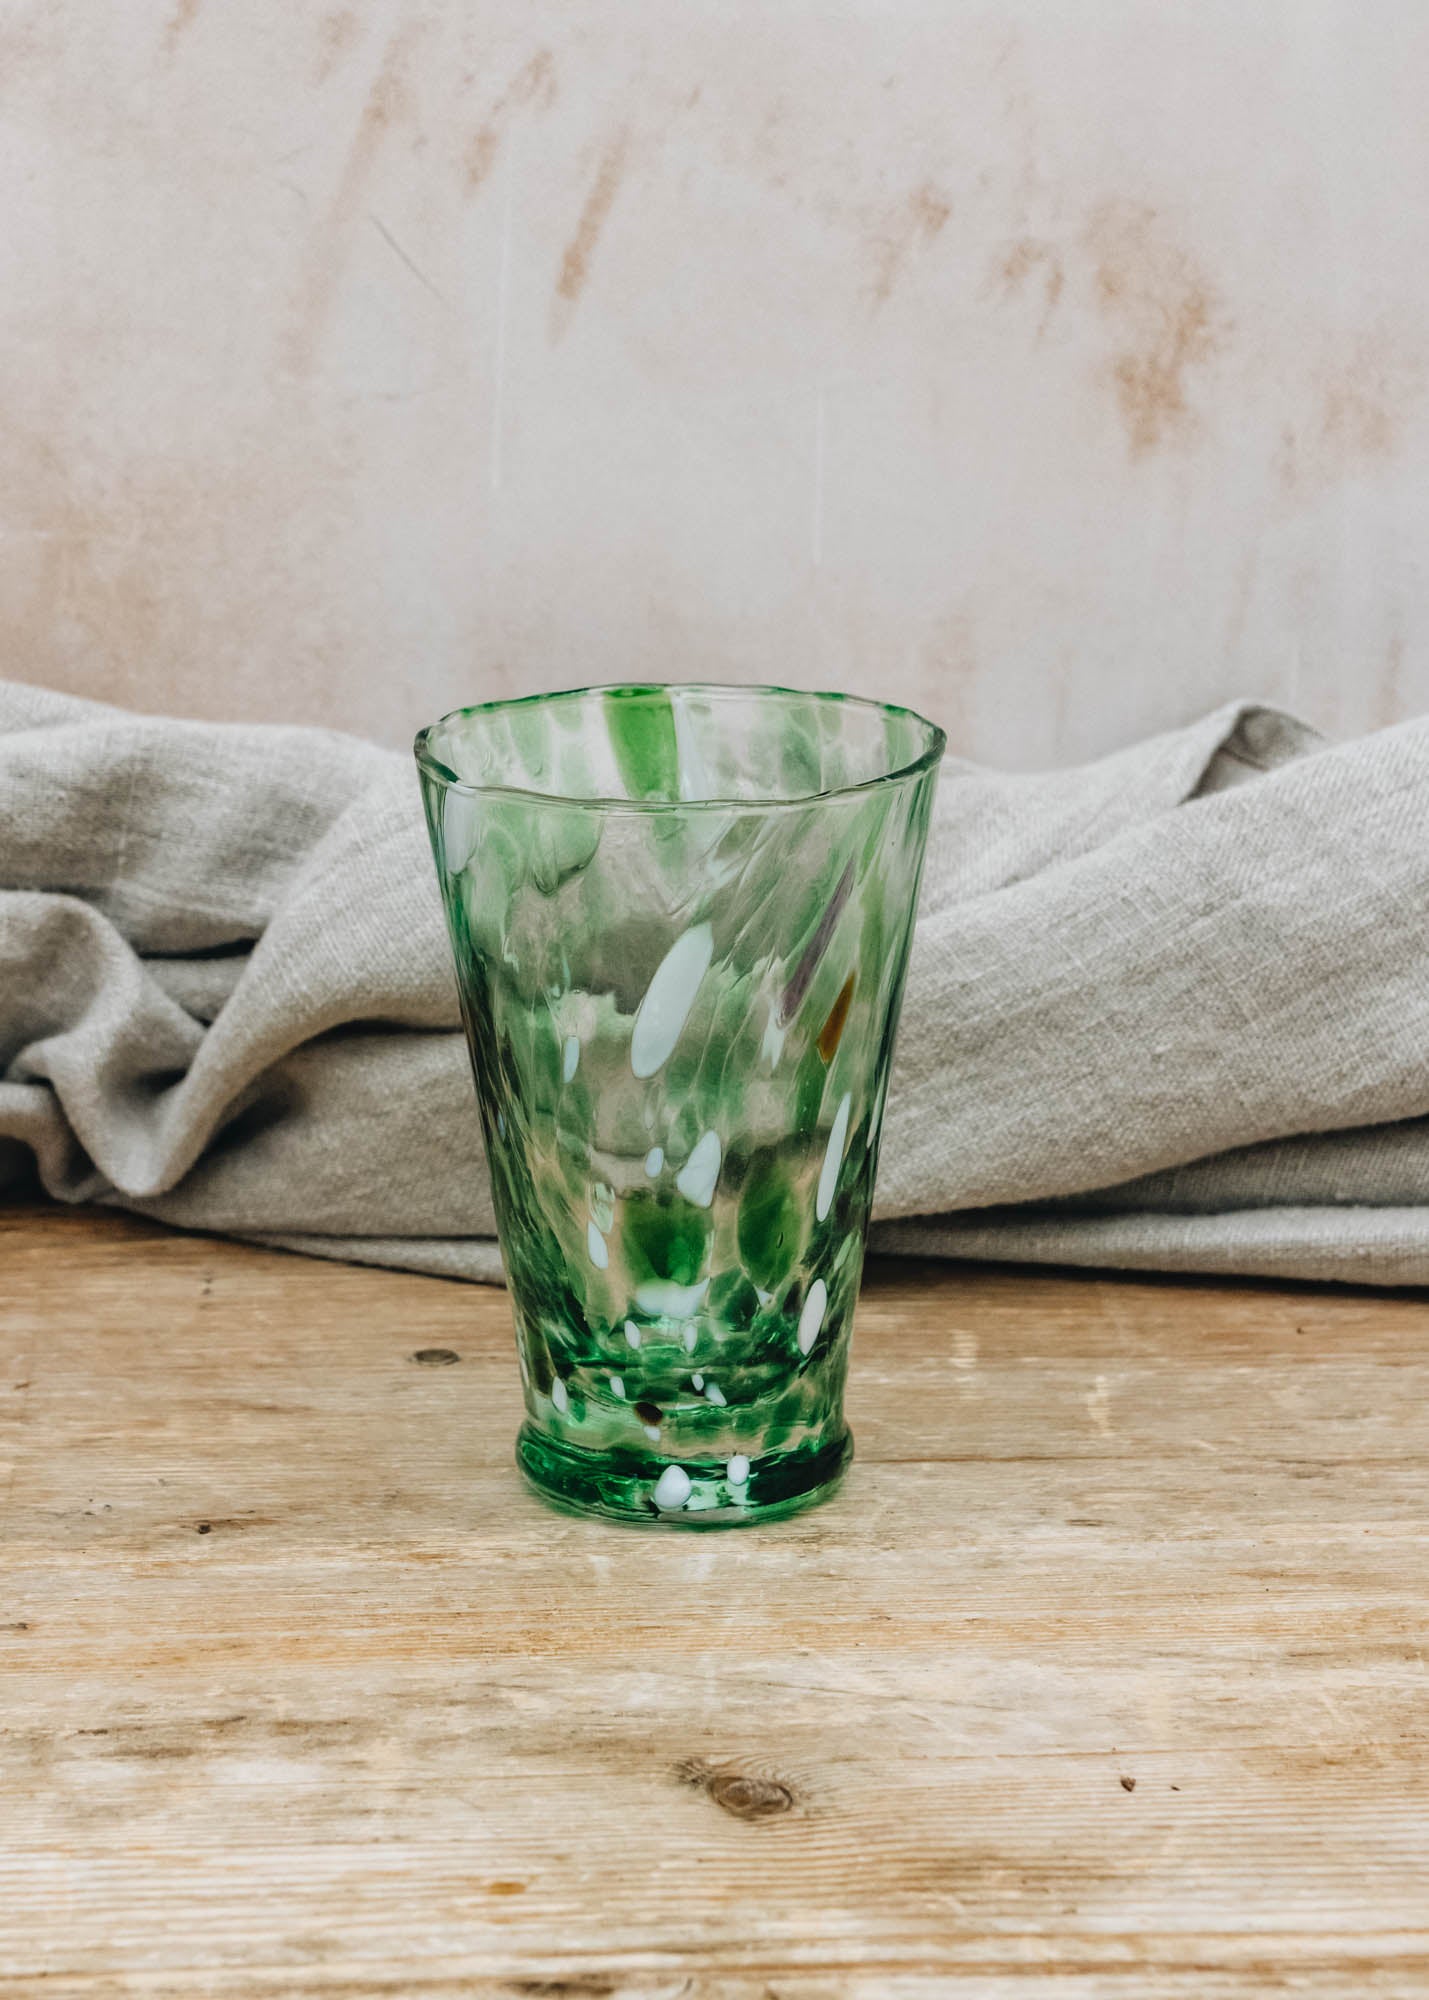 Van Verre Murano Glass in Dark Green